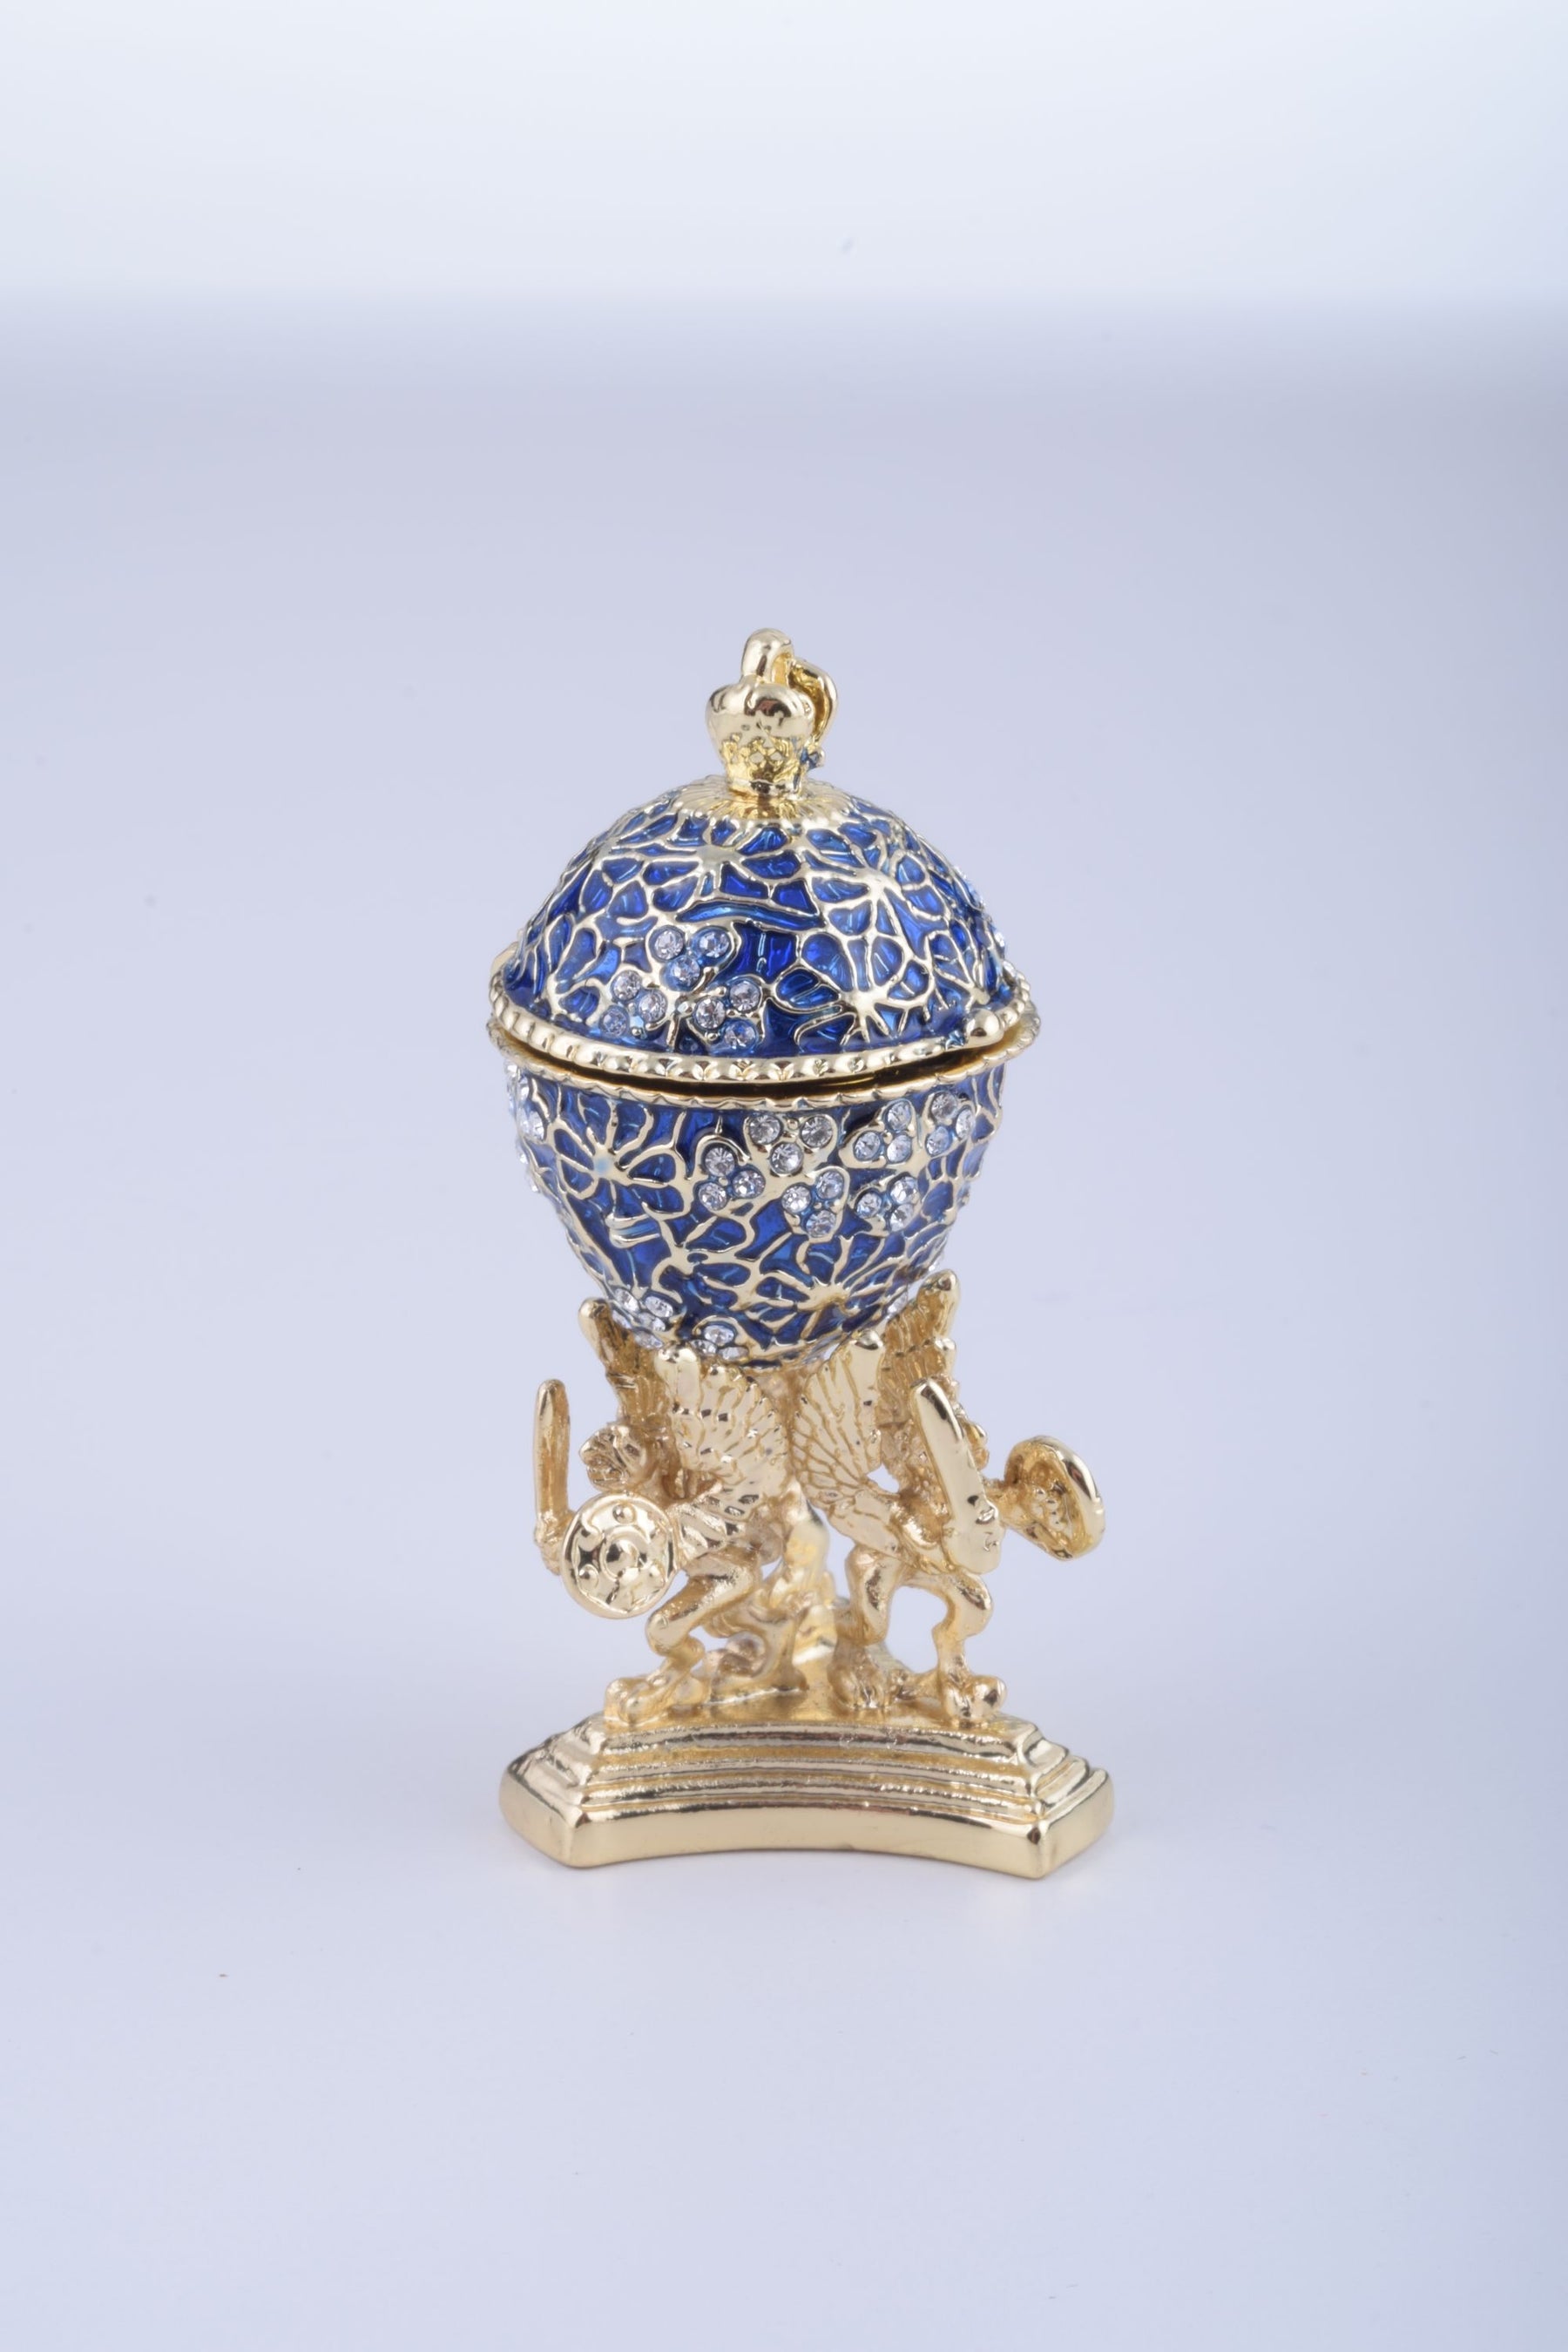 Oeuf de Fabergé bleu avec une grenouille dorée à l'intérieur